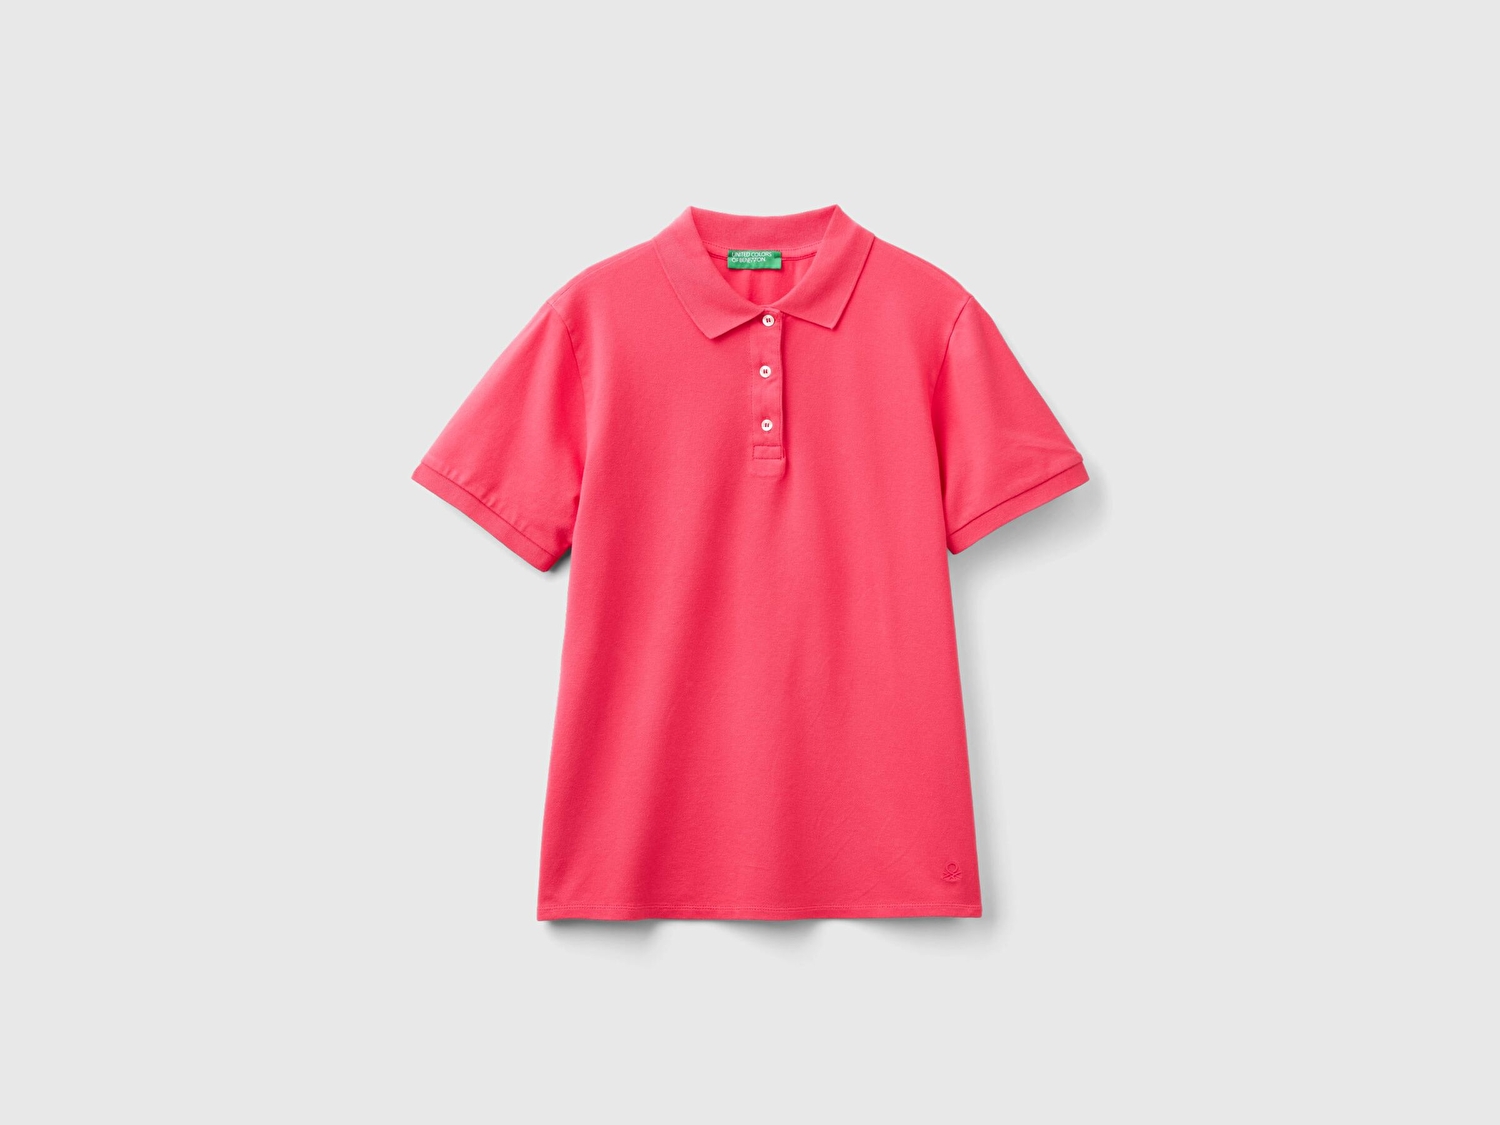 Benetton Kadın Koyu Pembe Streç Pamuklu Sol Altı Logo Baskılı Polo T-Shirt